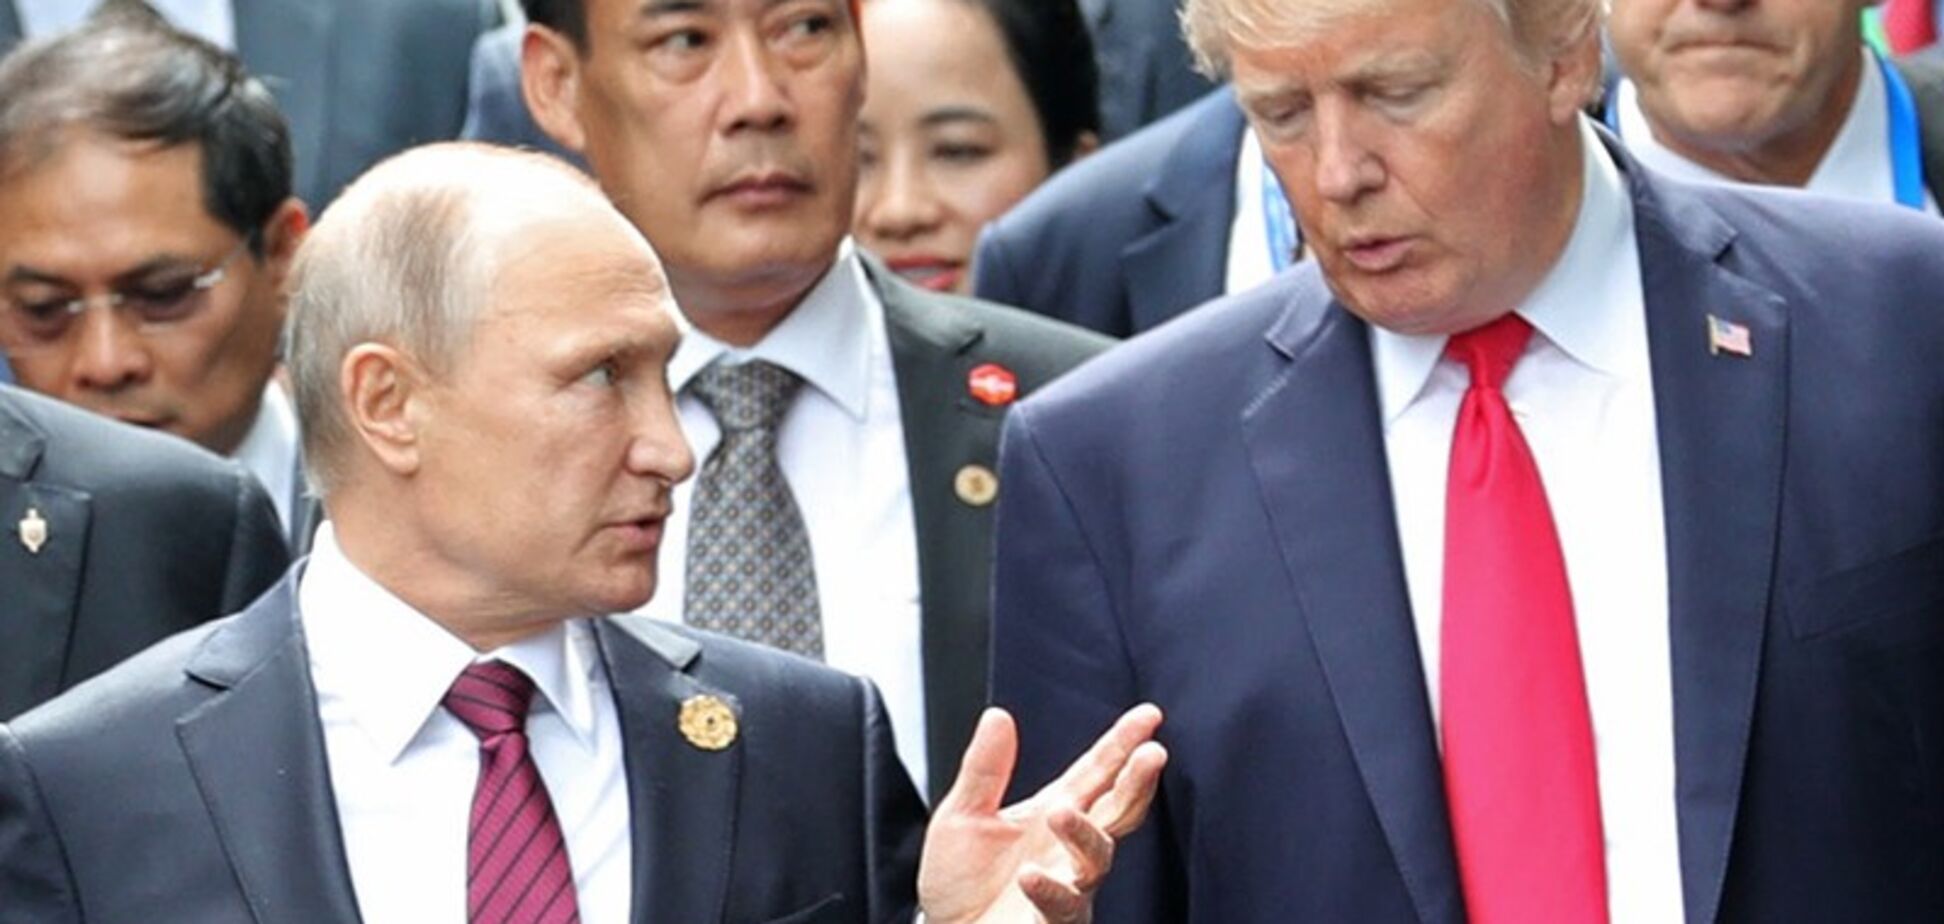 Через десятые руки: Трамп небрежно поздравил Путина с инаугурацией 